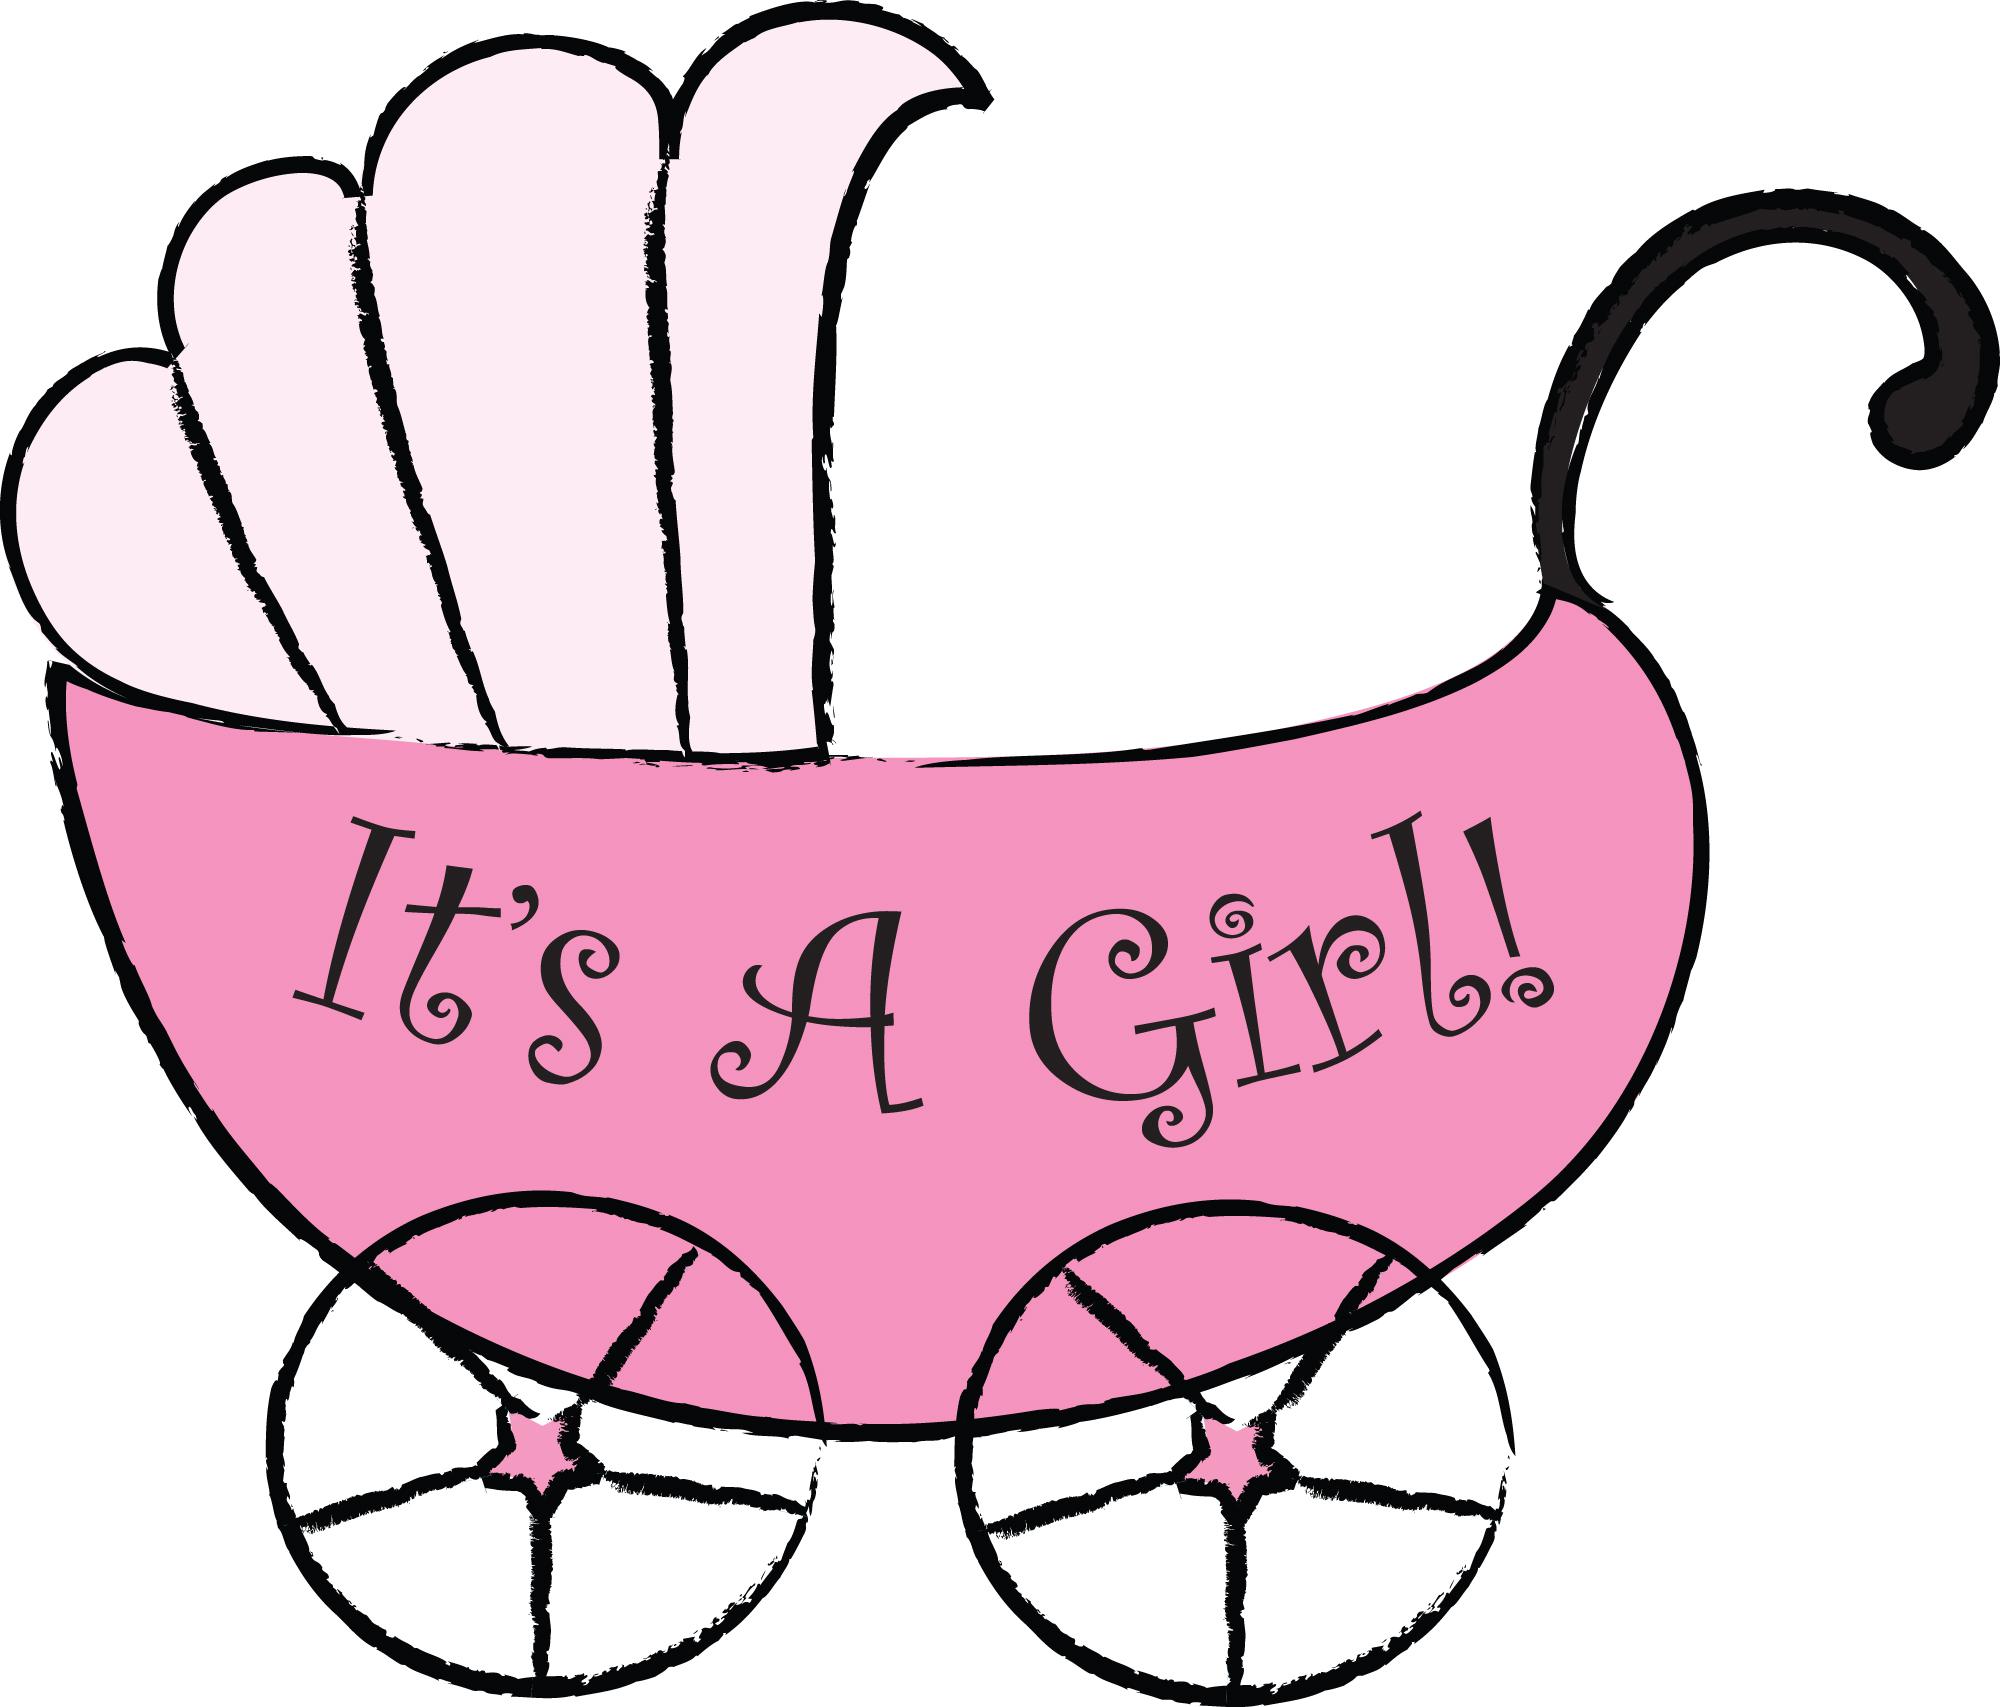 It is a Girl!